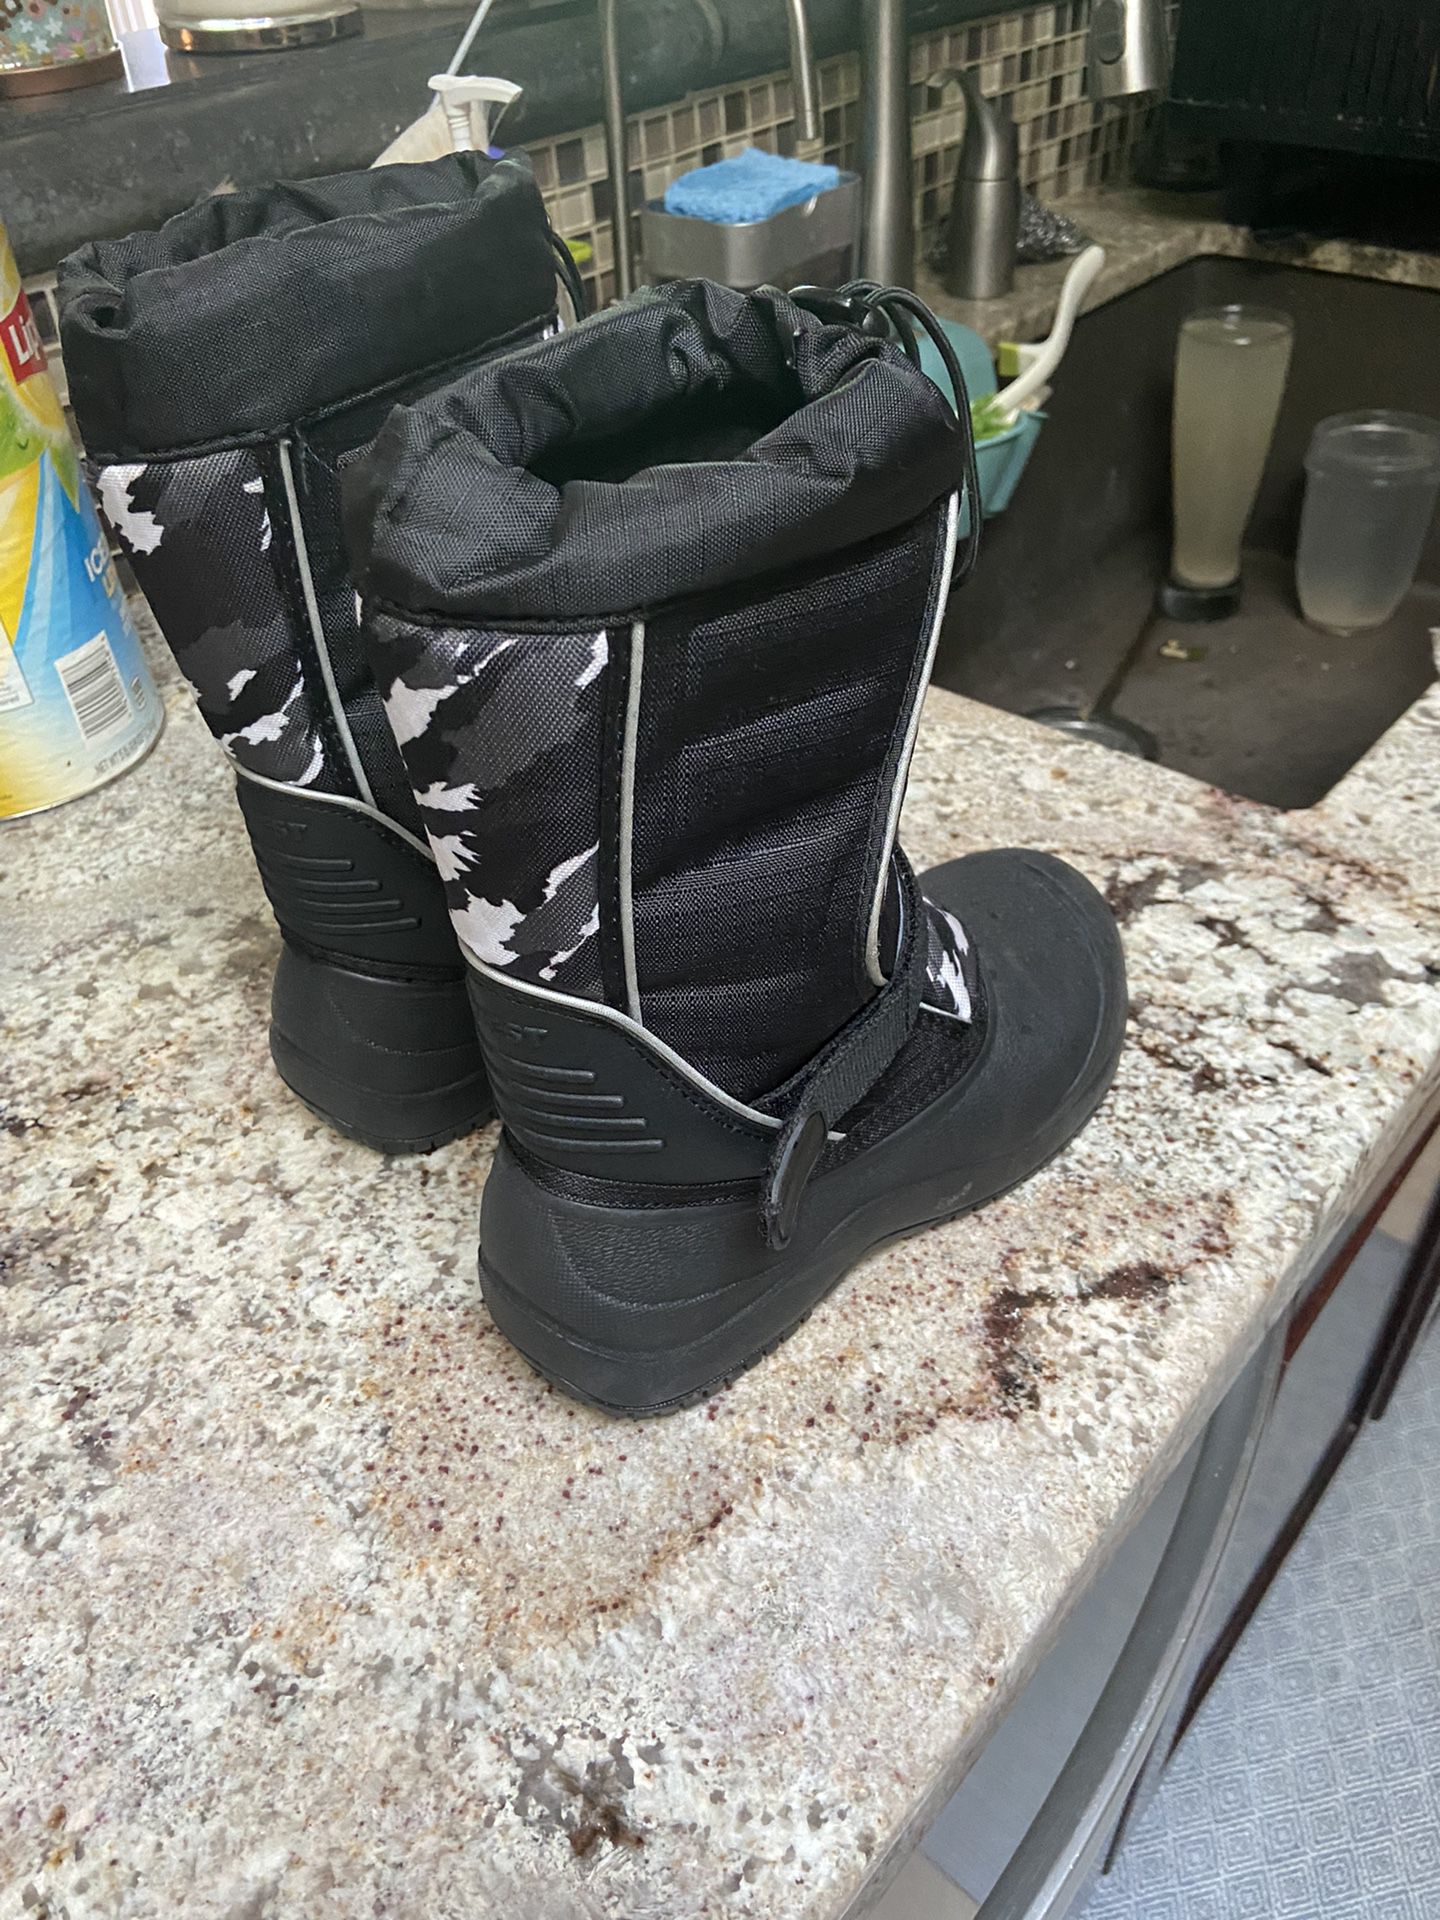 Boy’s Quest Winter Snow/Rain Boots